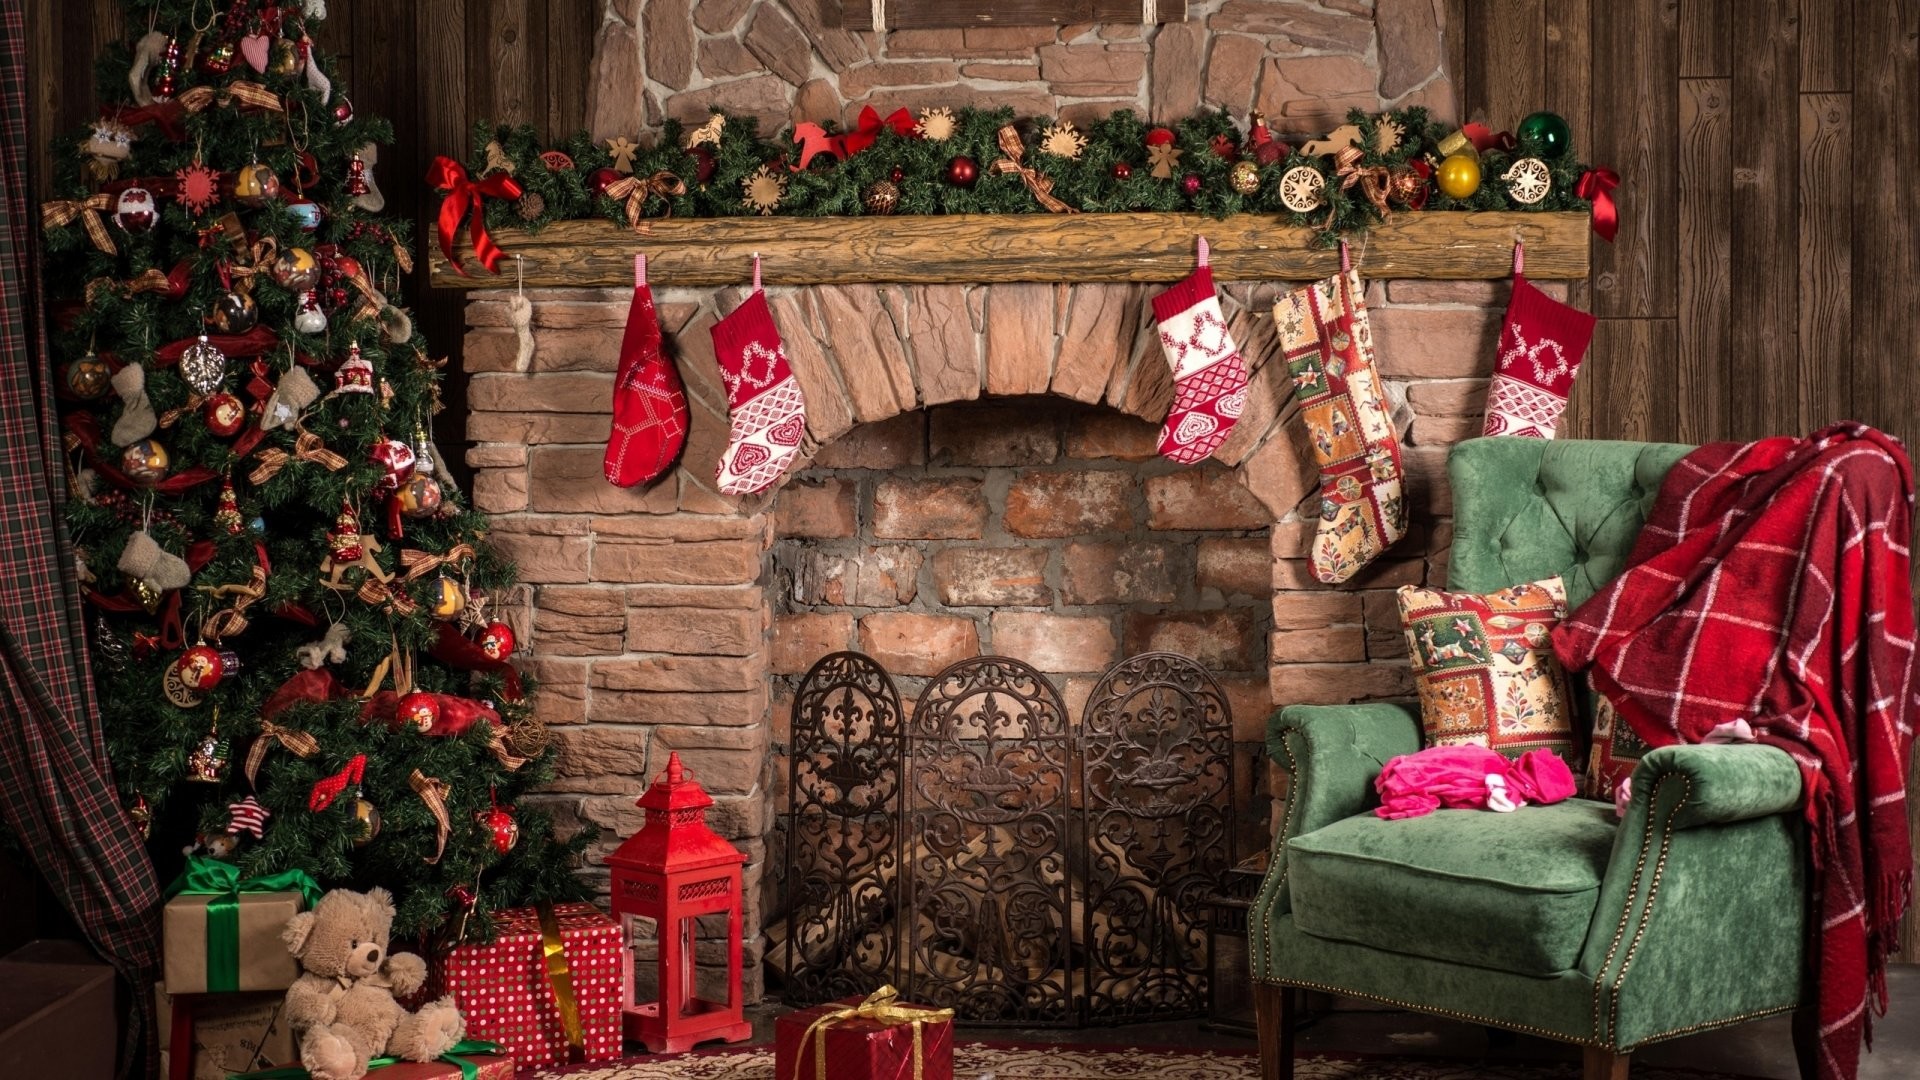 Hãy cho thế giới của bạn những chuyển động tuyệt đẹp với hình nền Noel 1920x1080 đầy màu sắc. Mỗi chi tiết được biến tấu tinh tế và kết hợp với nhau tạo ra một bức hình Giáng sinh suýt sánh ngang với những đêm lễ hội tuyệt vời. Hãy cảm nhận rằng Chúa Giáng sinh vẫn đang ở bên cạnh chúng ta.